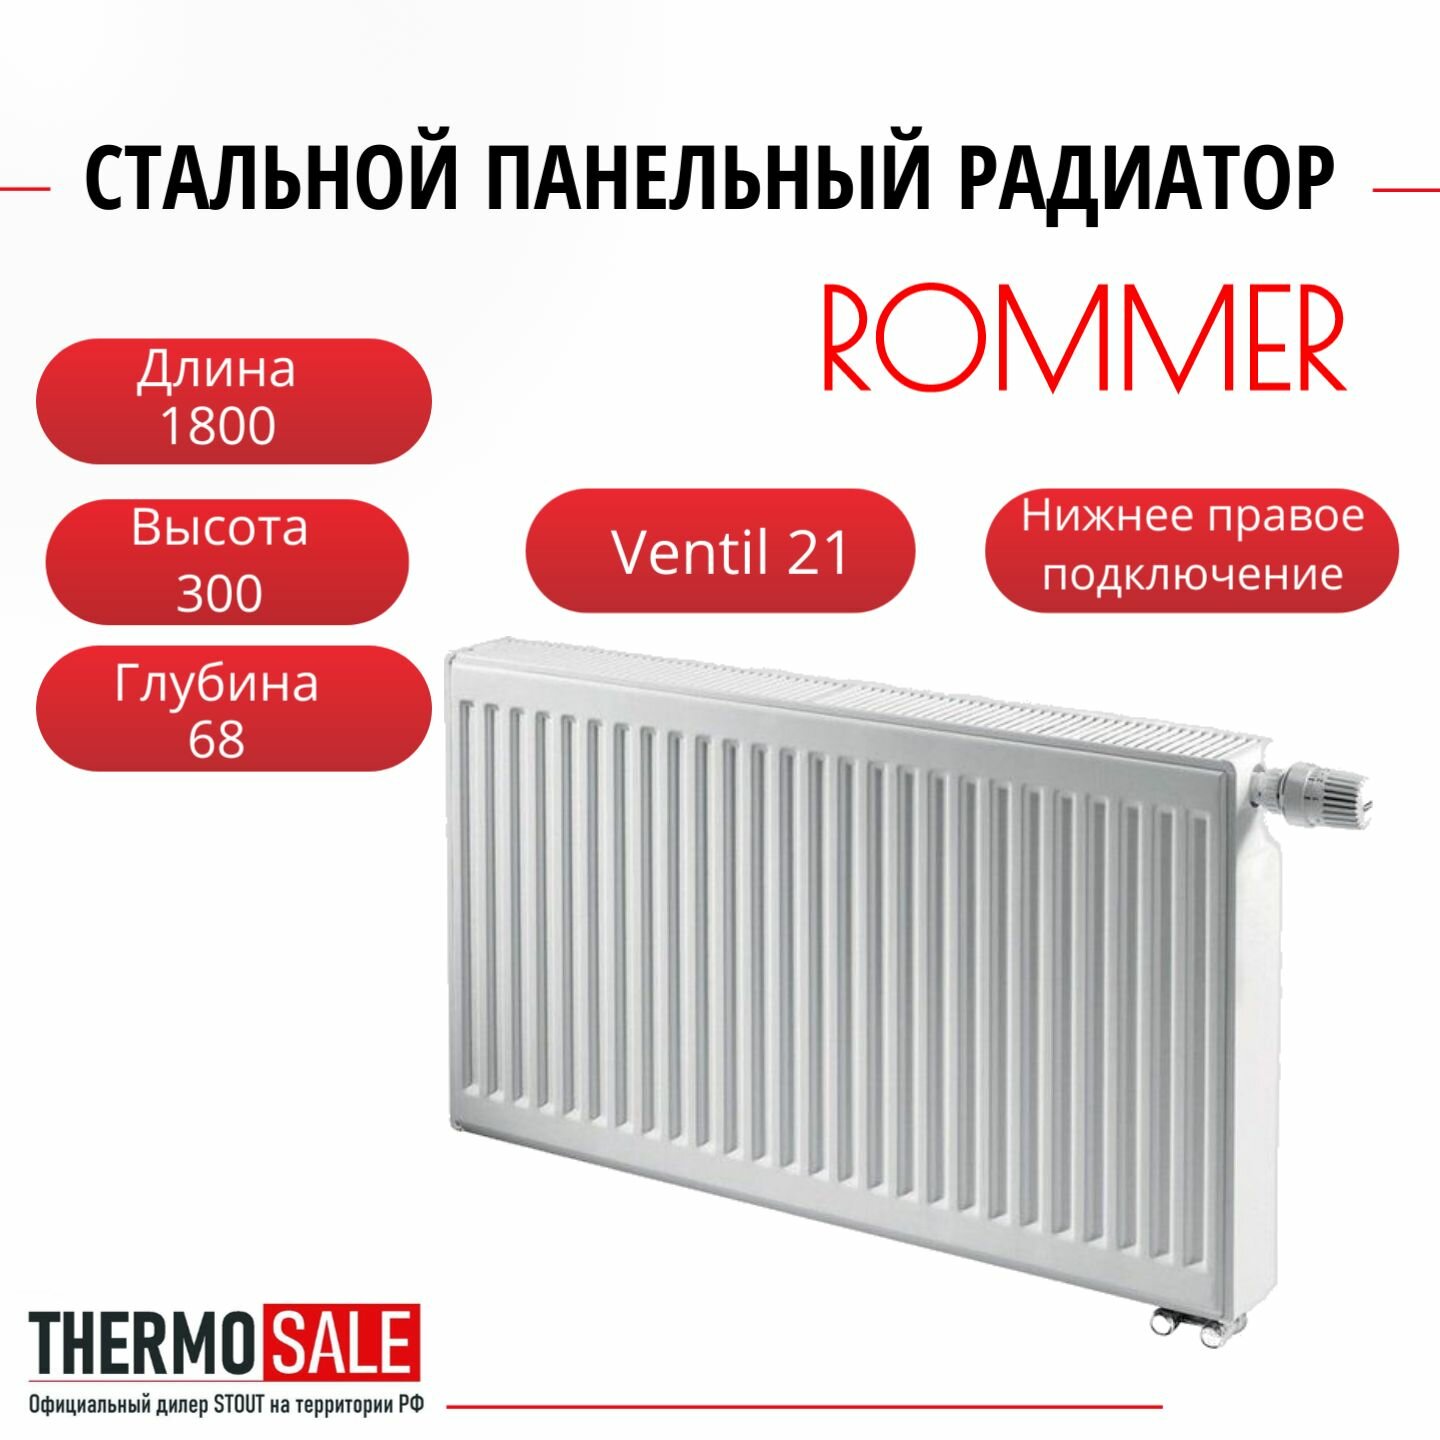 Радиатор стальной панельный ROMMER 300х1800 нижнее правое подключение Ventil 21/300/1800 RRS-2020-213180